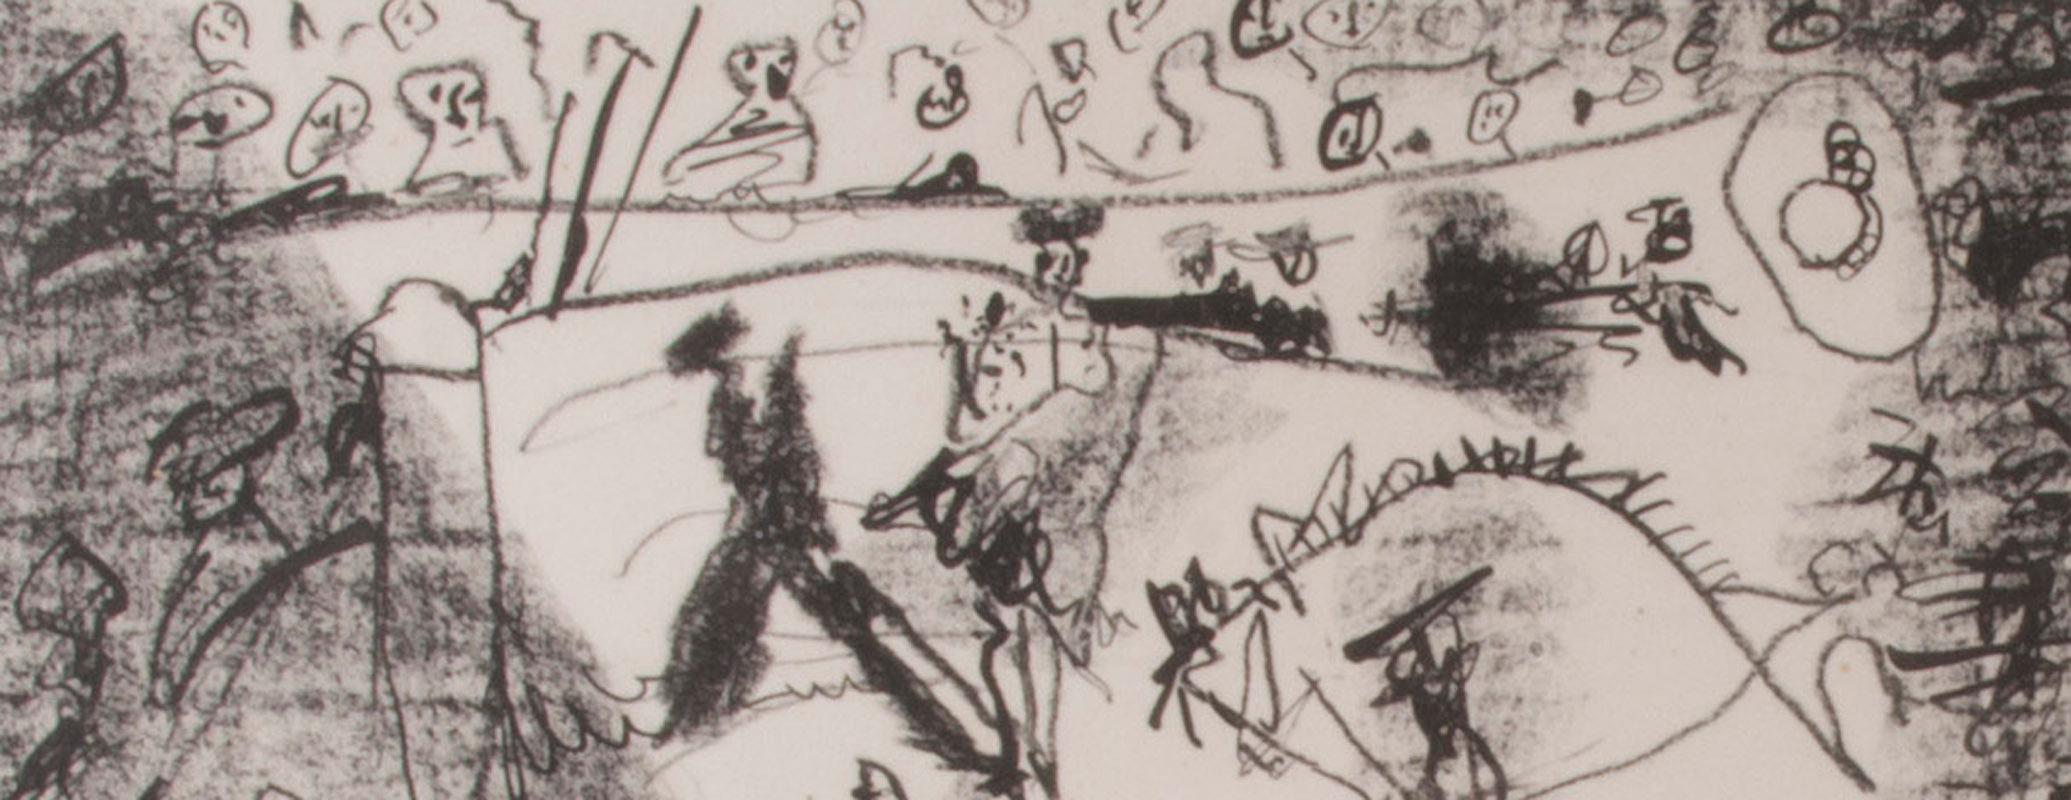 La Pique (Der Pike) – Print von Pablo Picasso